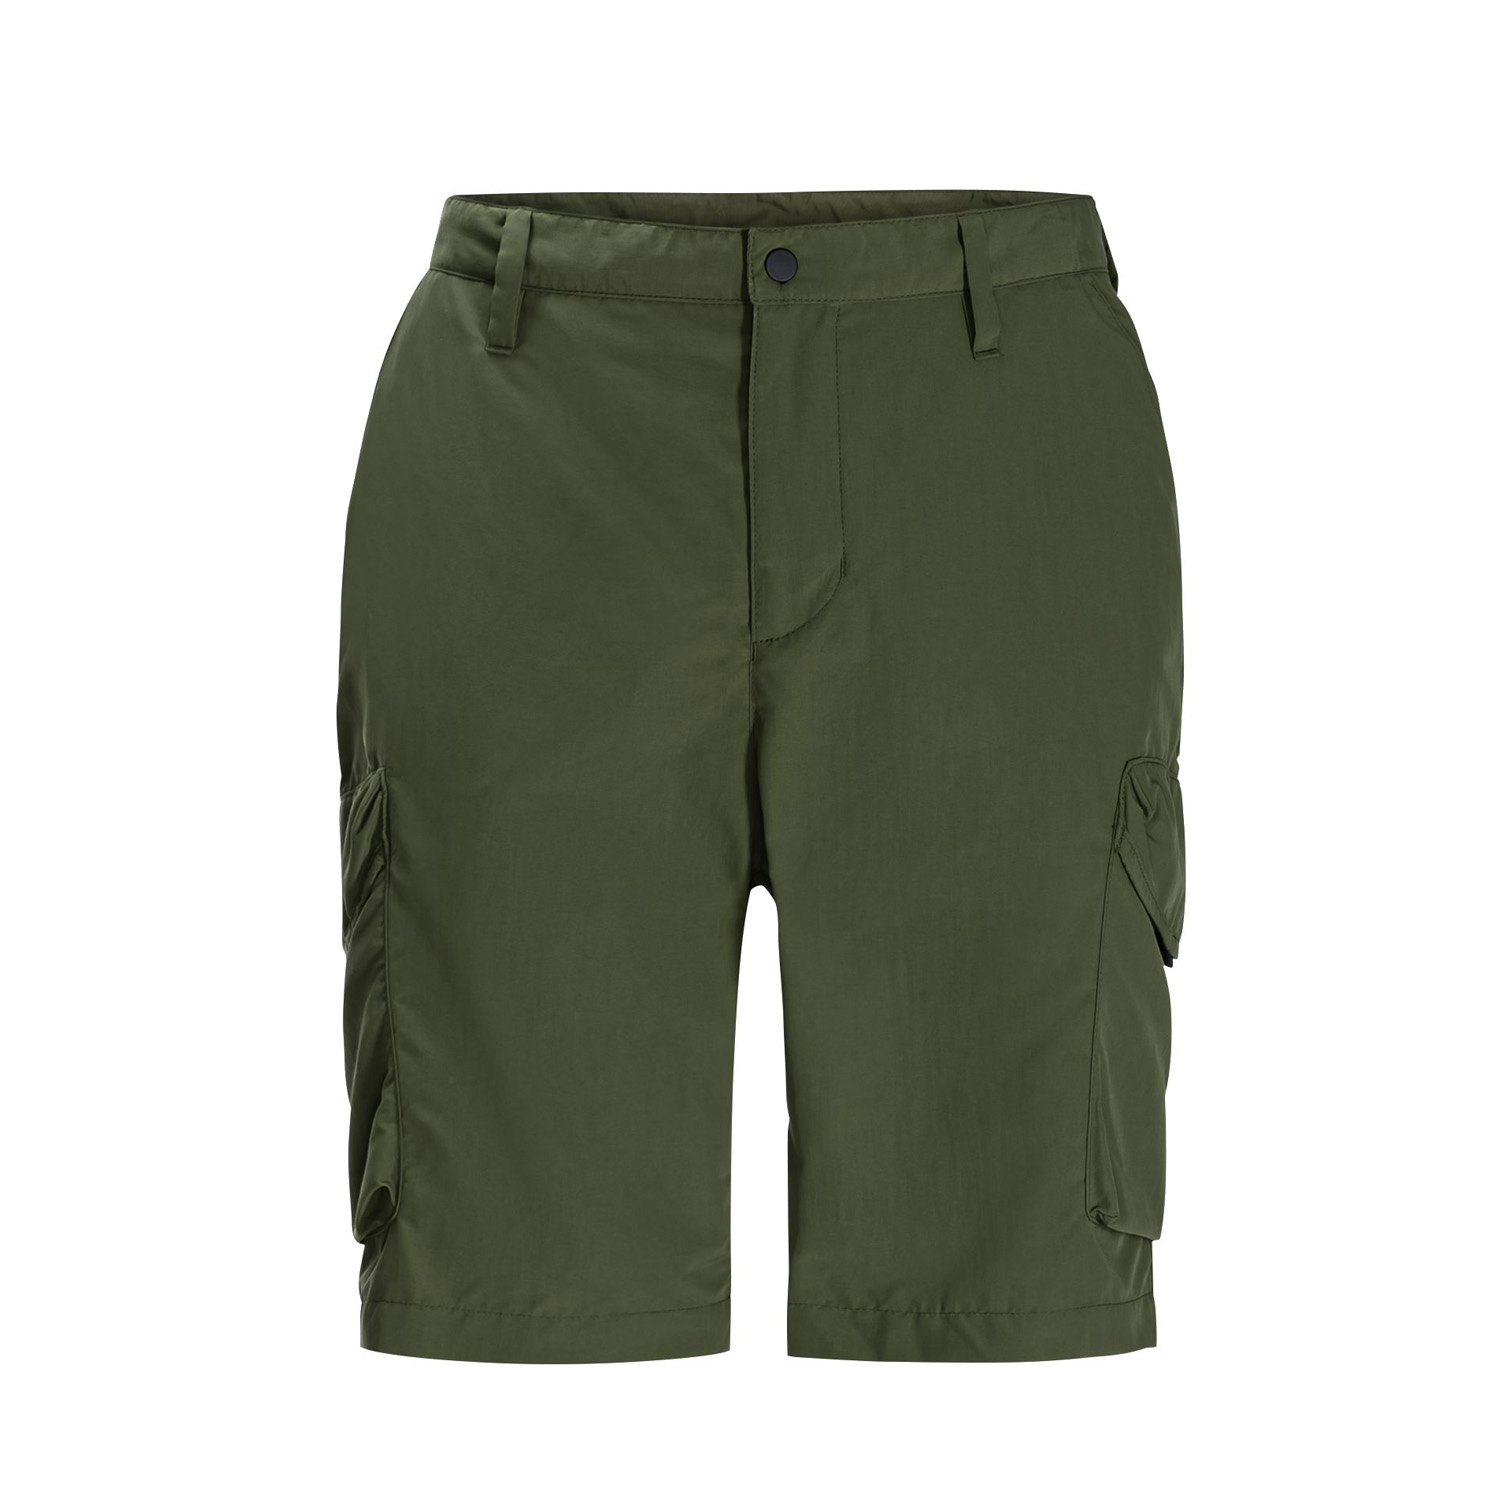 Jack Wolfskin Kalahari Cargo Erkek Outdoor Pantolon - Yeşil - 1